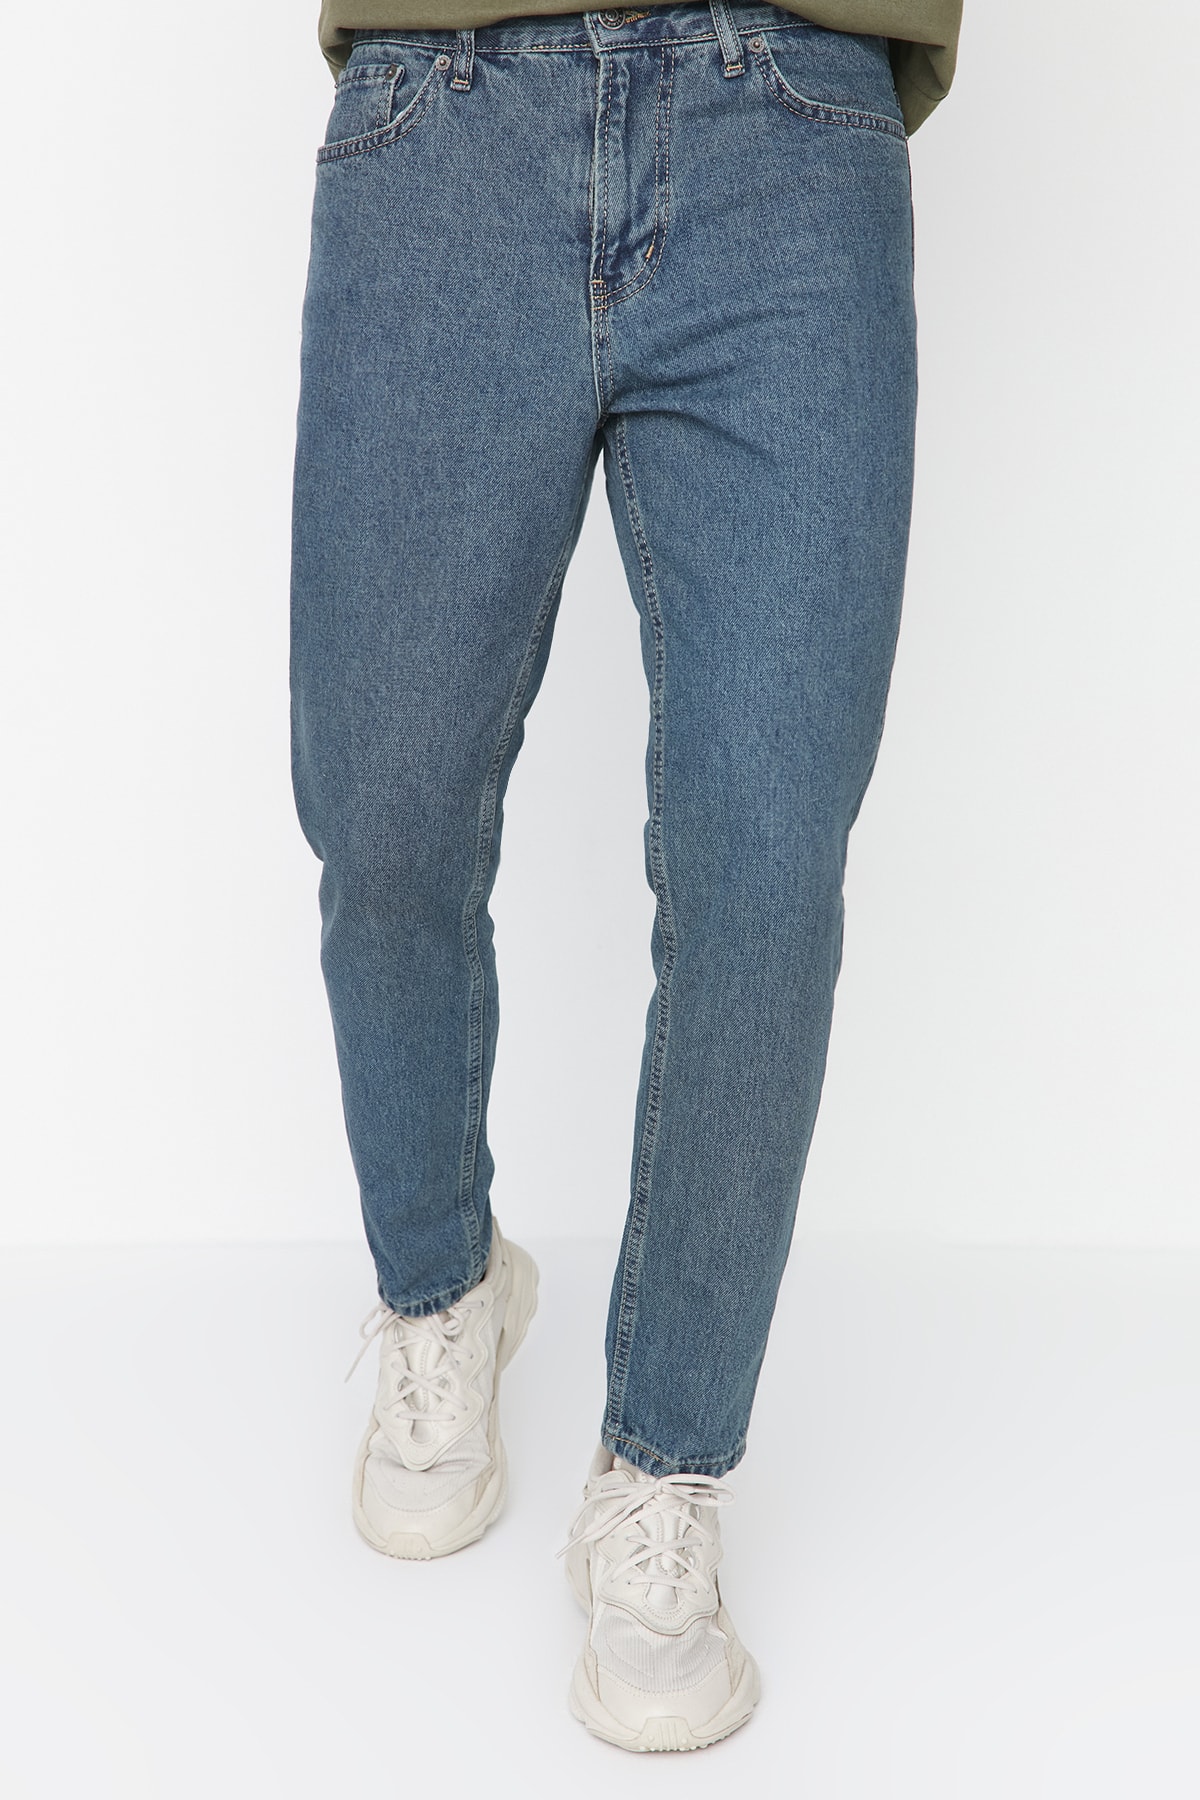 Levně Trendyol Navy Blue Green Vintage Look Relax Fit Boyfriend Jeans Denim Trousers